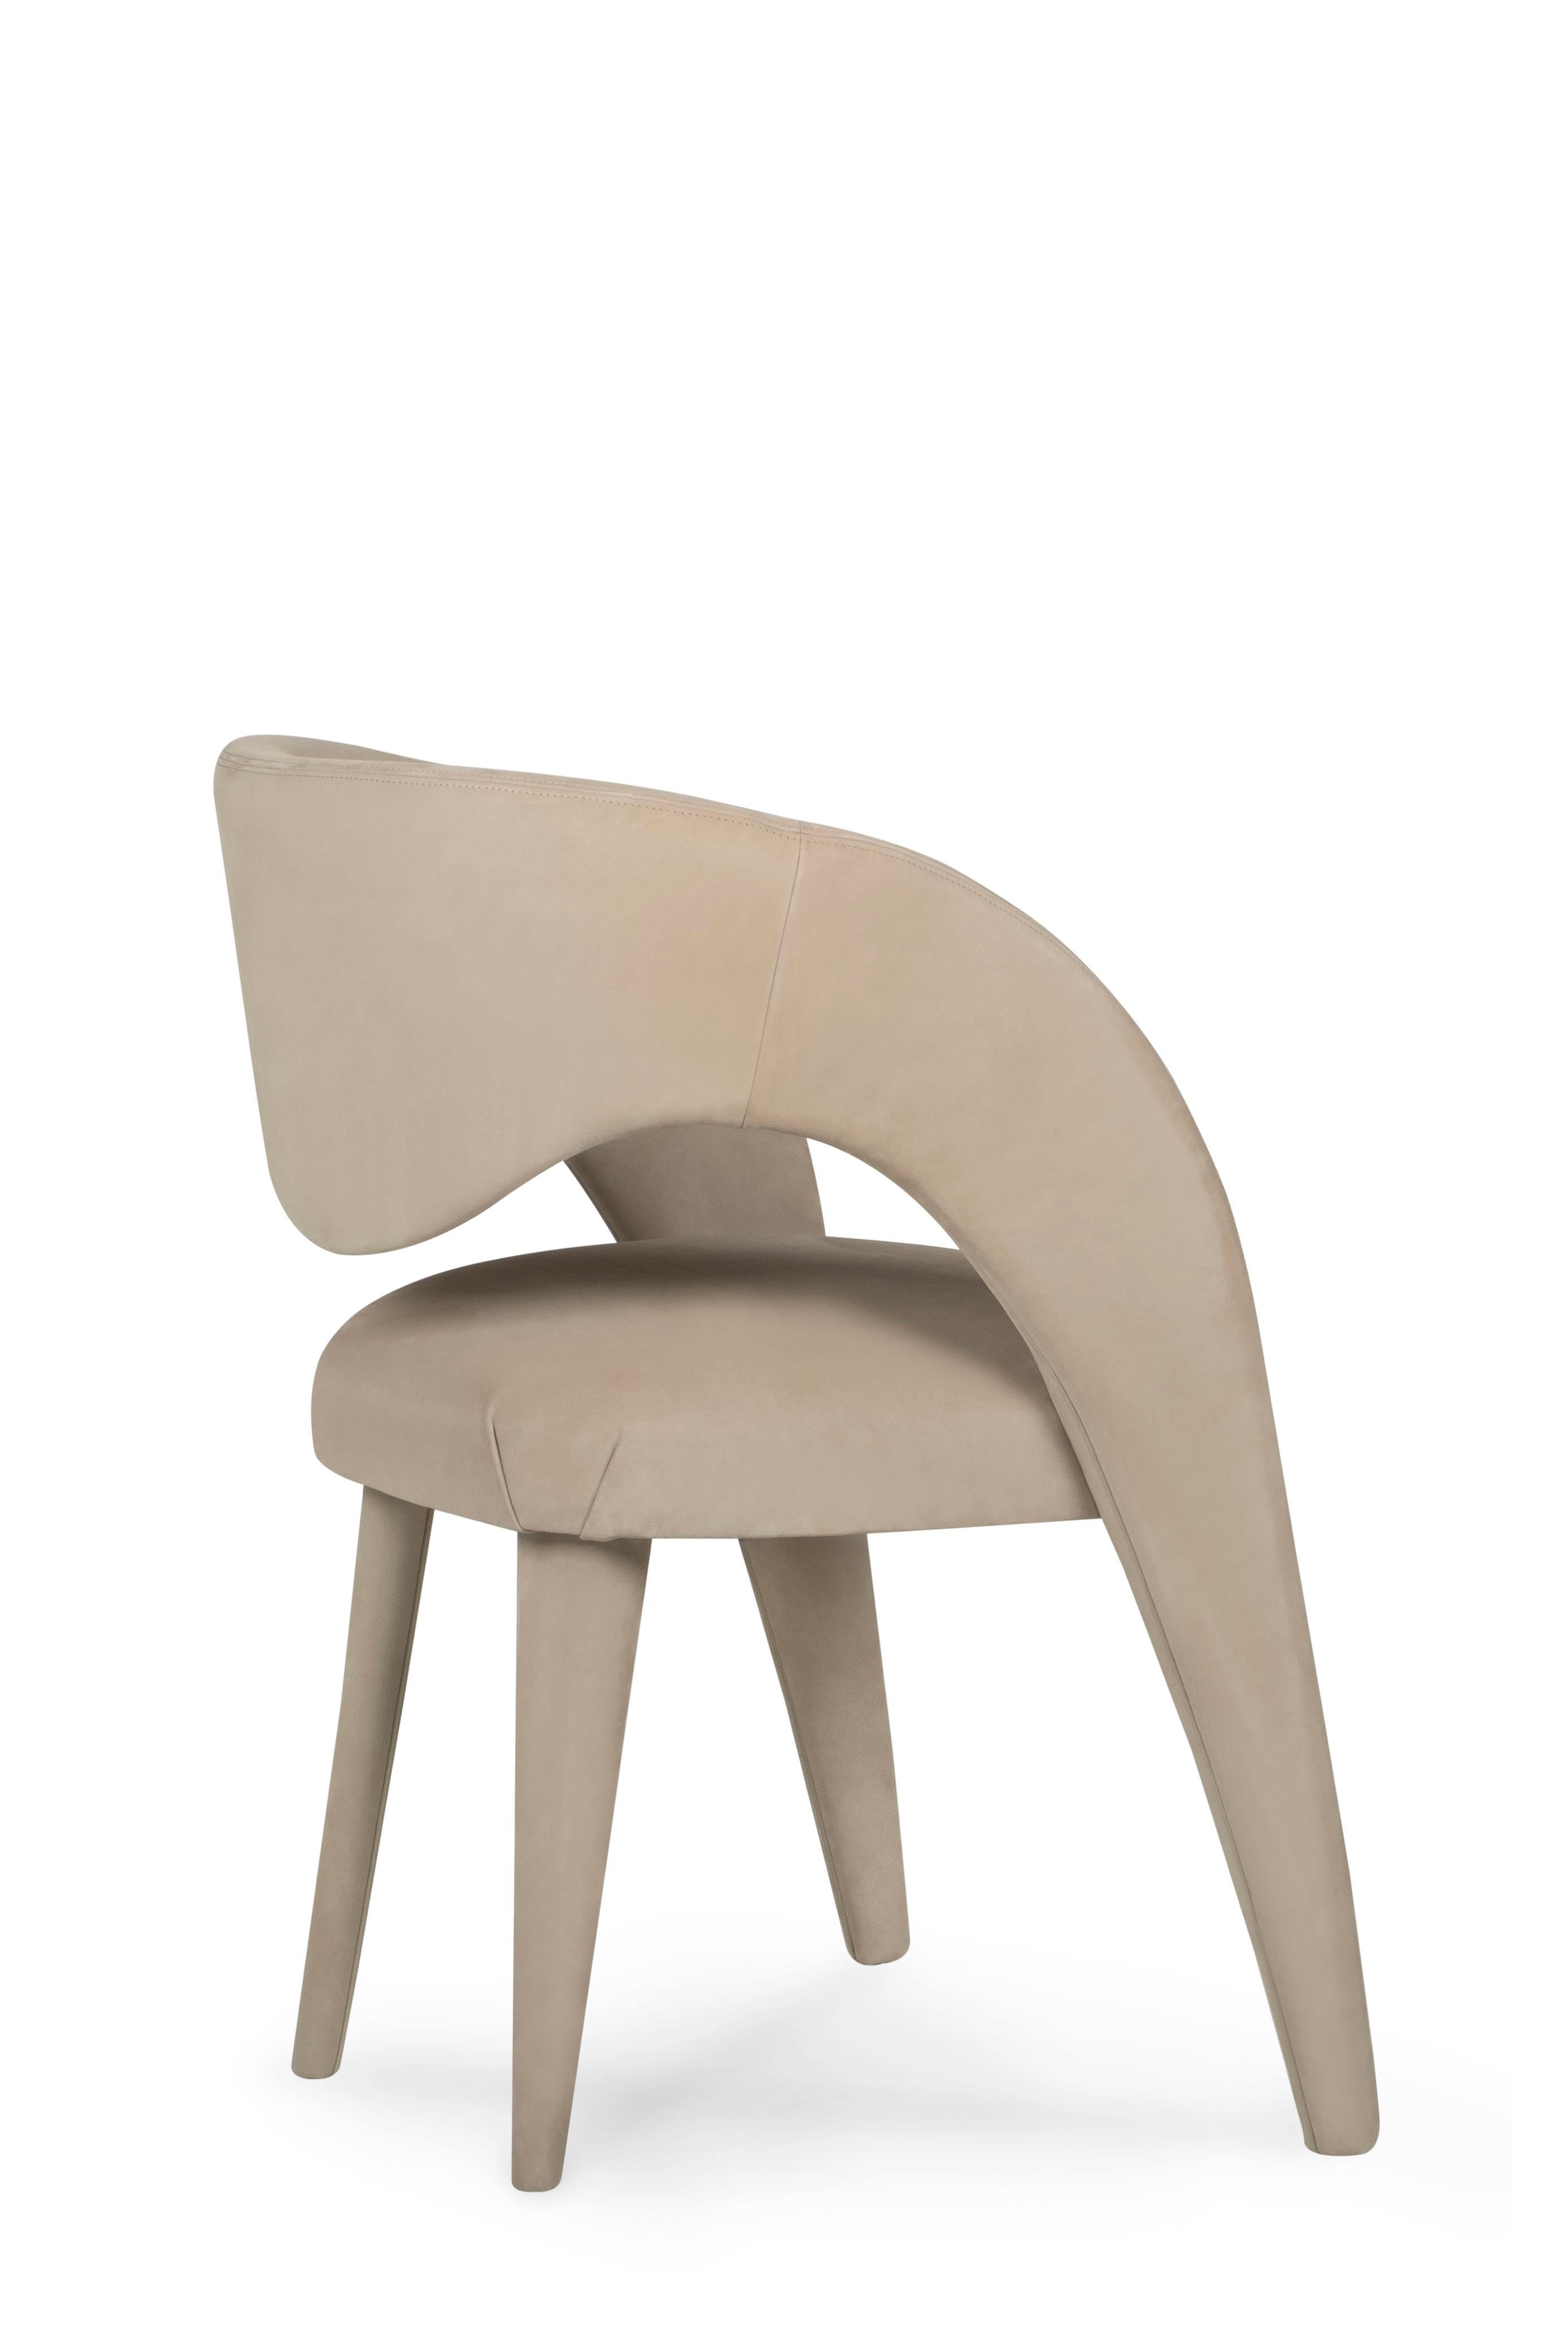 Laurence Chair, Collection'S Contemporary, handgefertigt in Portugal - Europa von Greenapple.

Der von Rute Martins für die Collection'S Contemporary entworfene Esszimmerstuhl Laurence aus Leder wurde mit der künstlerischen Absicht geschaffen, das